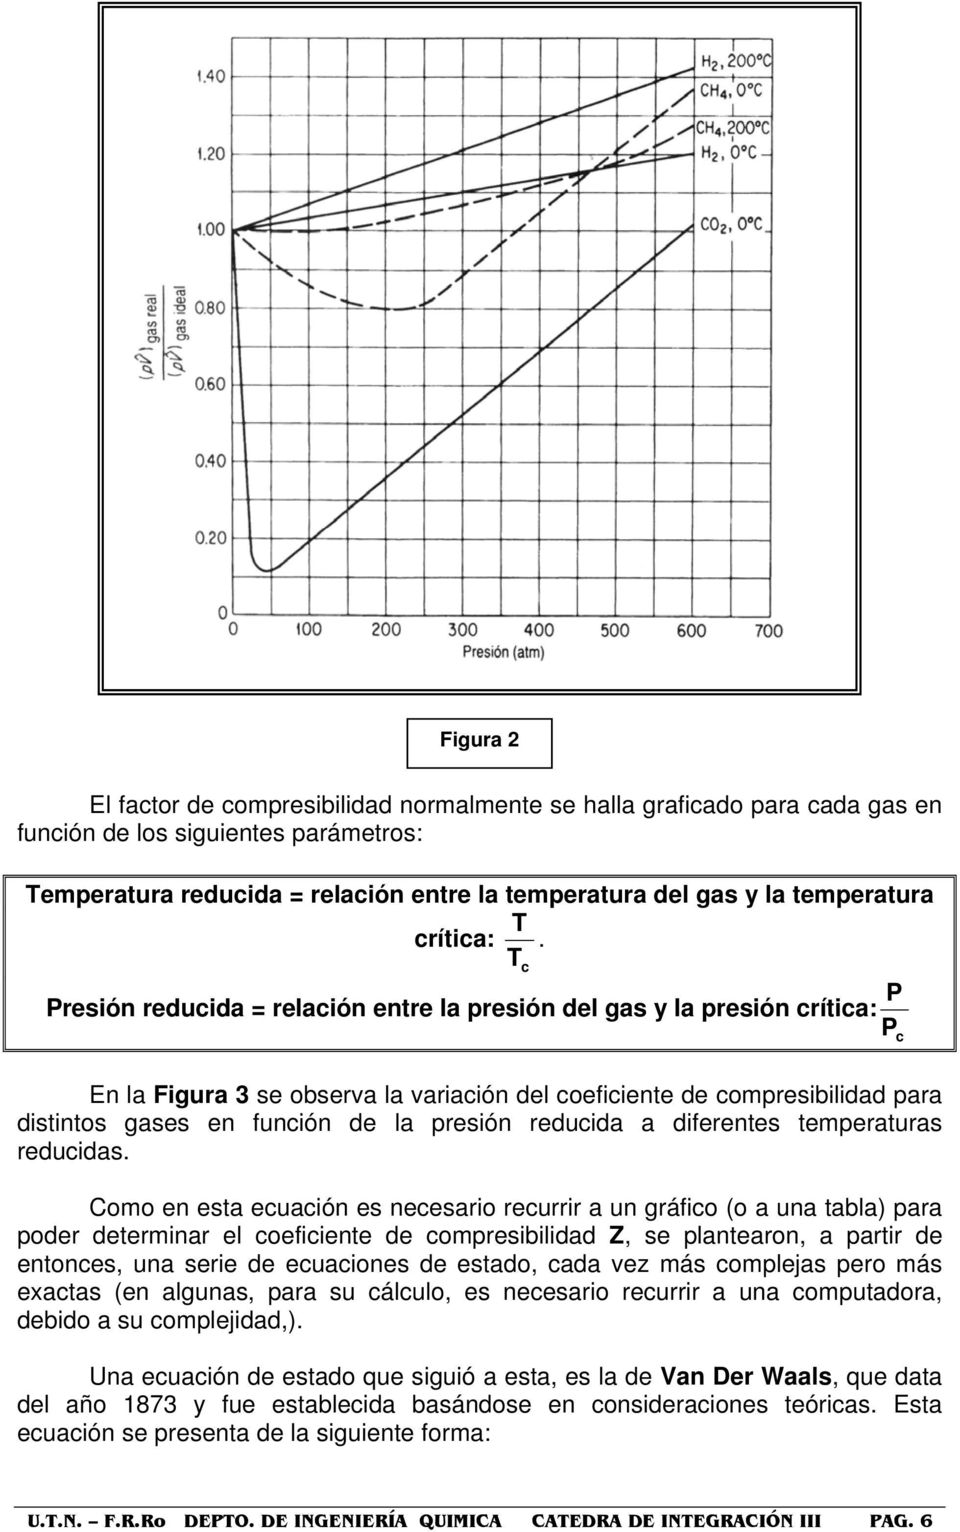 P Presión reduida = relaión entre la presión del gas y la presión rítia: P En la Figura 3 se observa la variaión del oefiiente de ompresibilidad para distintos gases en funión de la presión reduida a